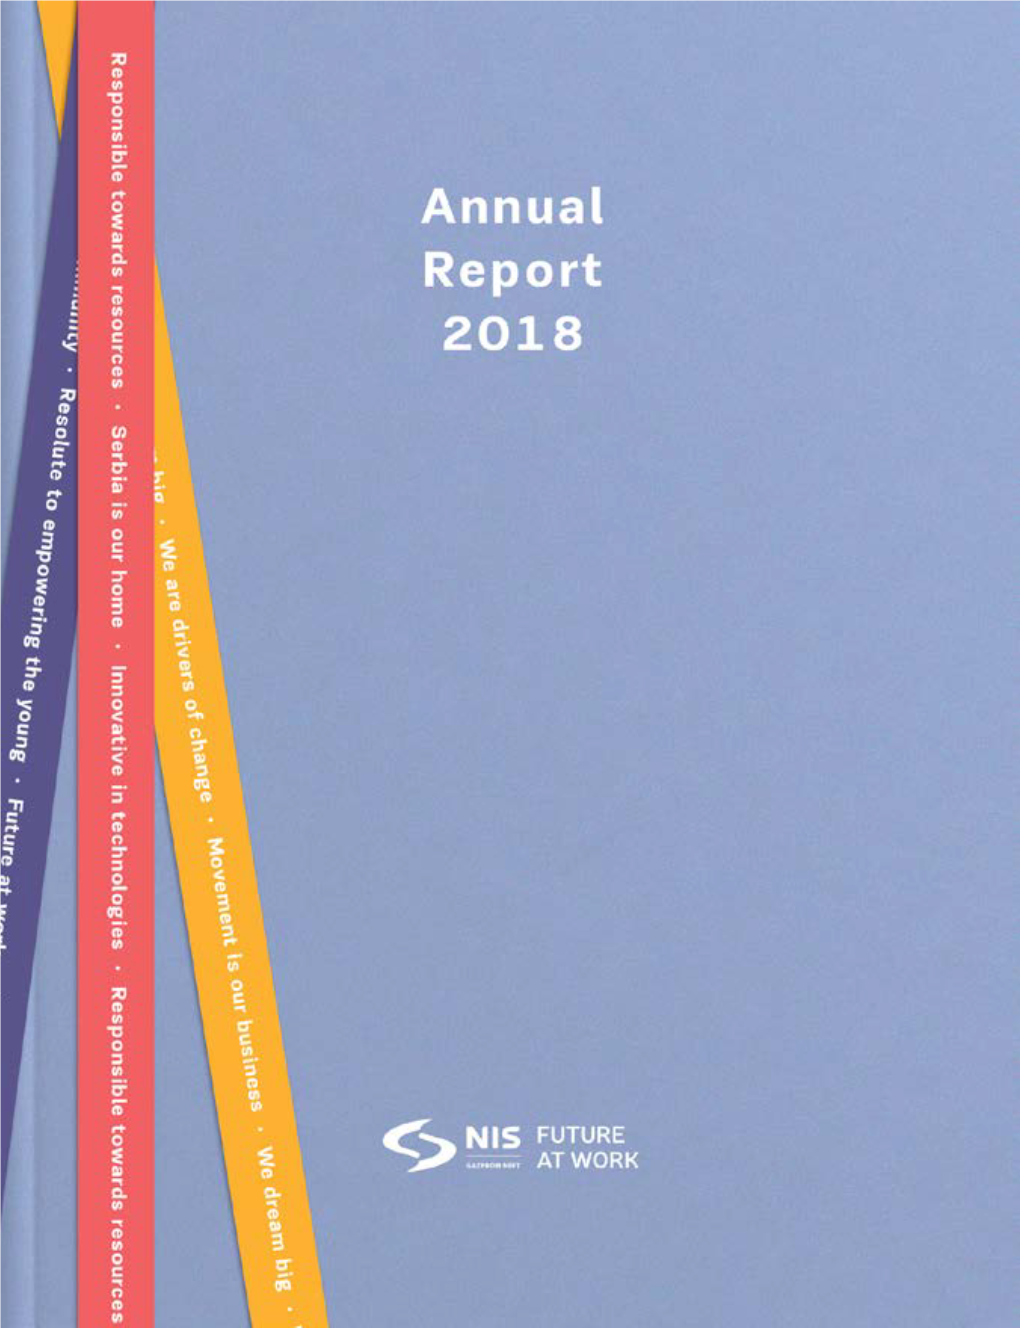 Annual Report 1 Annual Report 2018